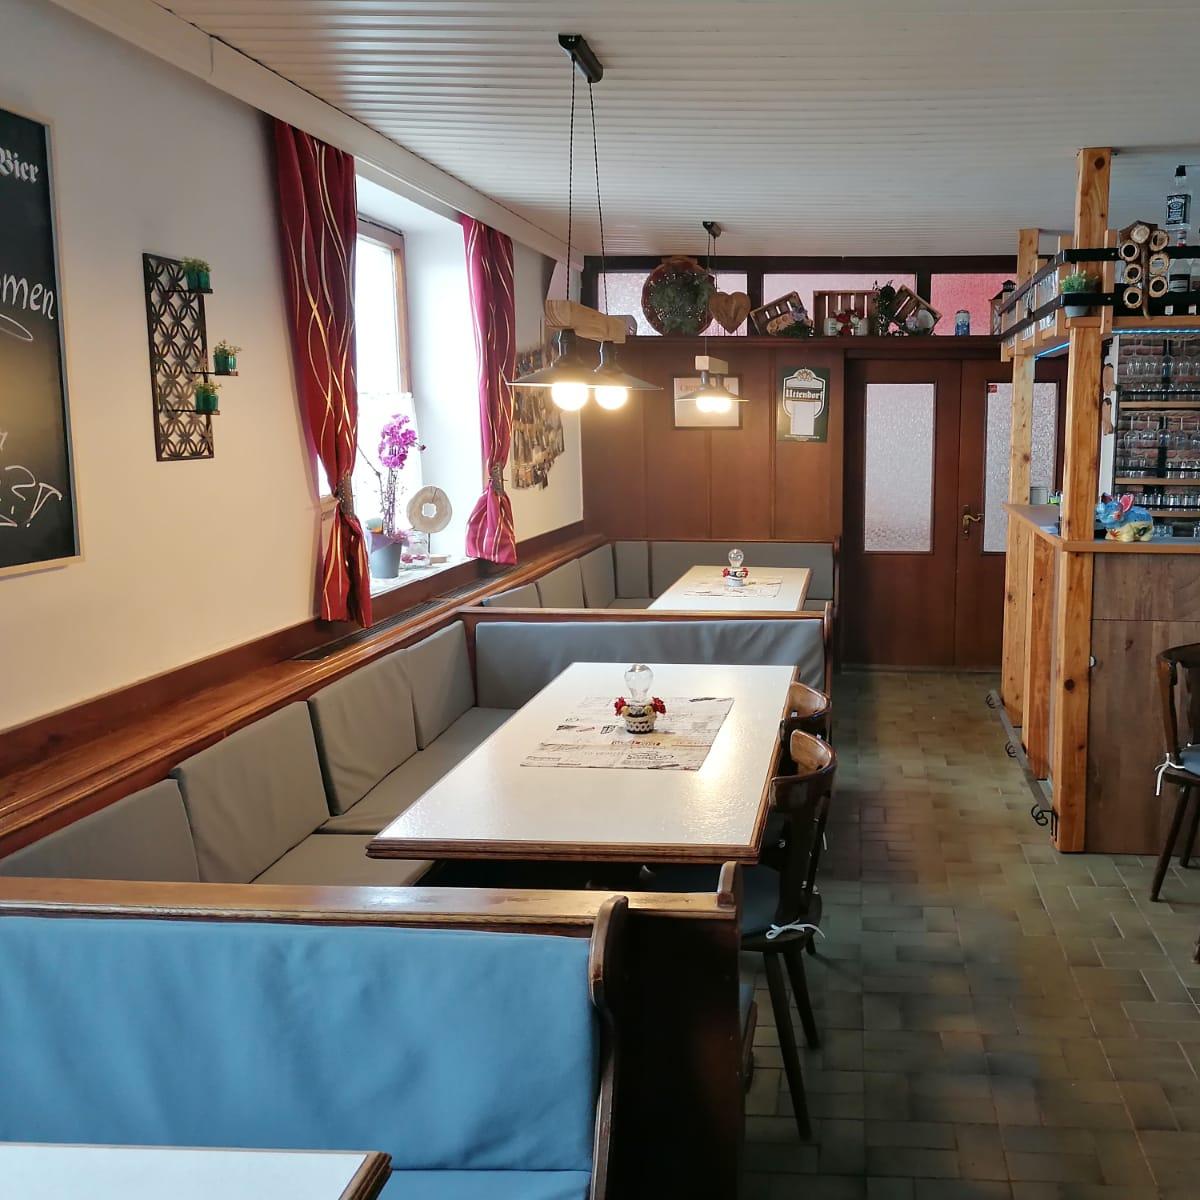 Restaurant "Gasthaus Schachinger zur Bine" in Mattighofen